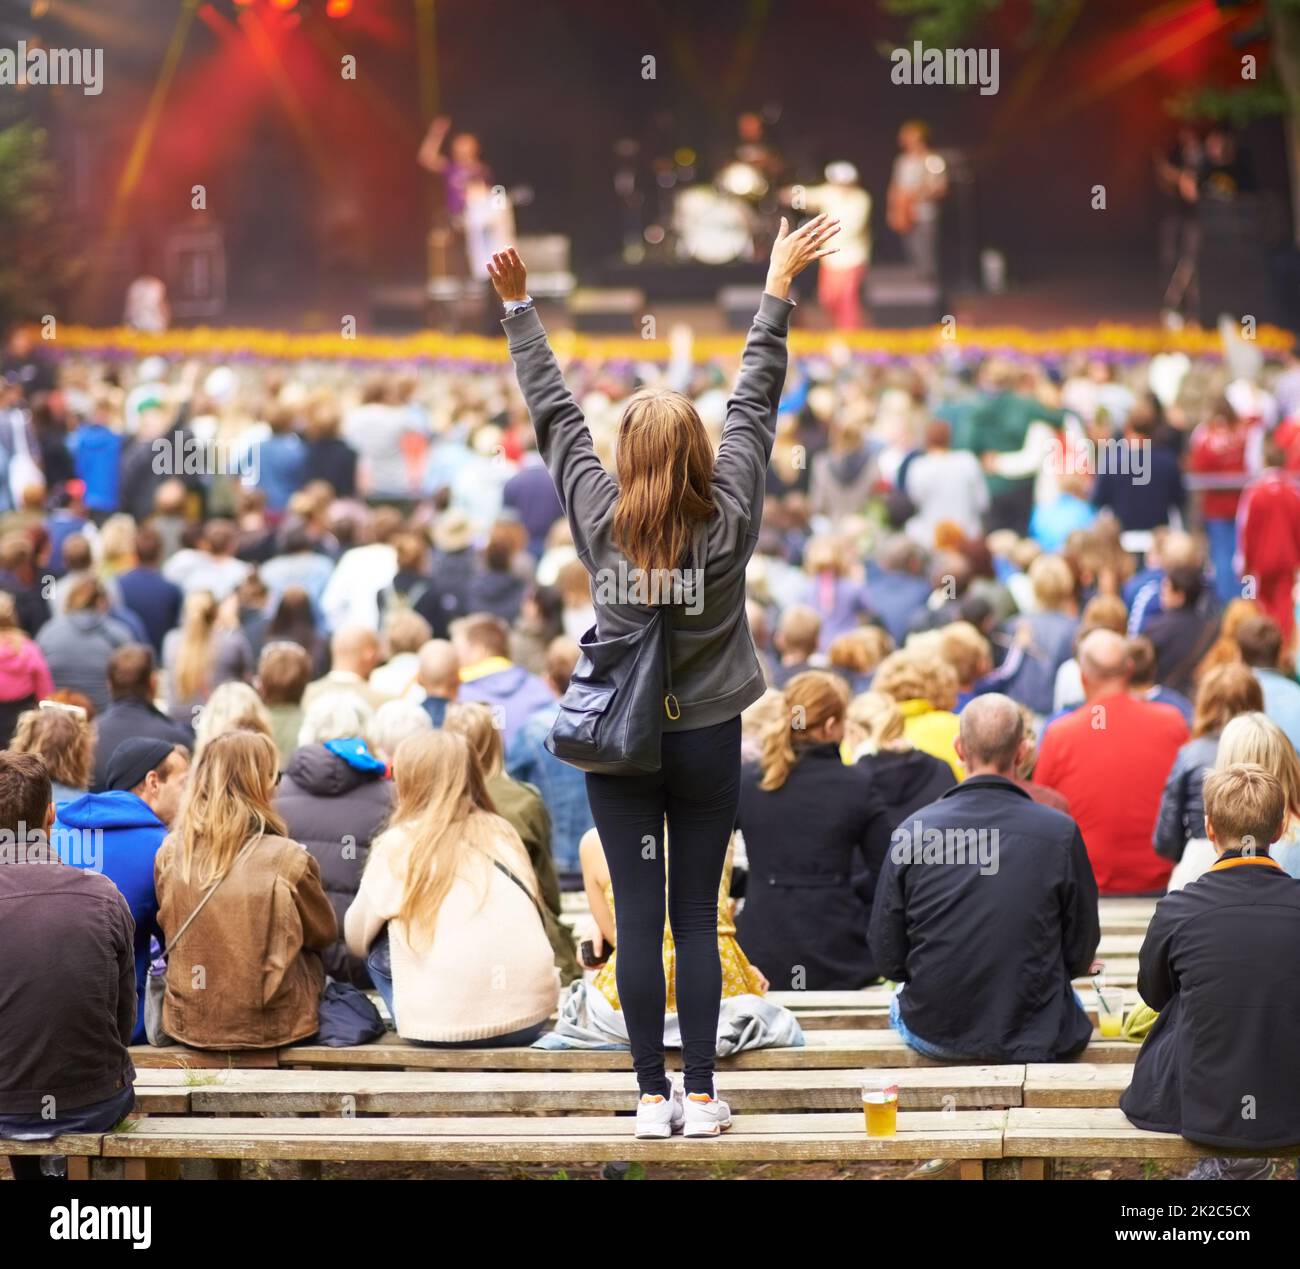 Indovinate chi la sua band preferita.... Dietro l'inquadratura di una folla in un festival di musica all'aperto, con l'attenzione rivolta a un tifoso femminile. Foto Stock